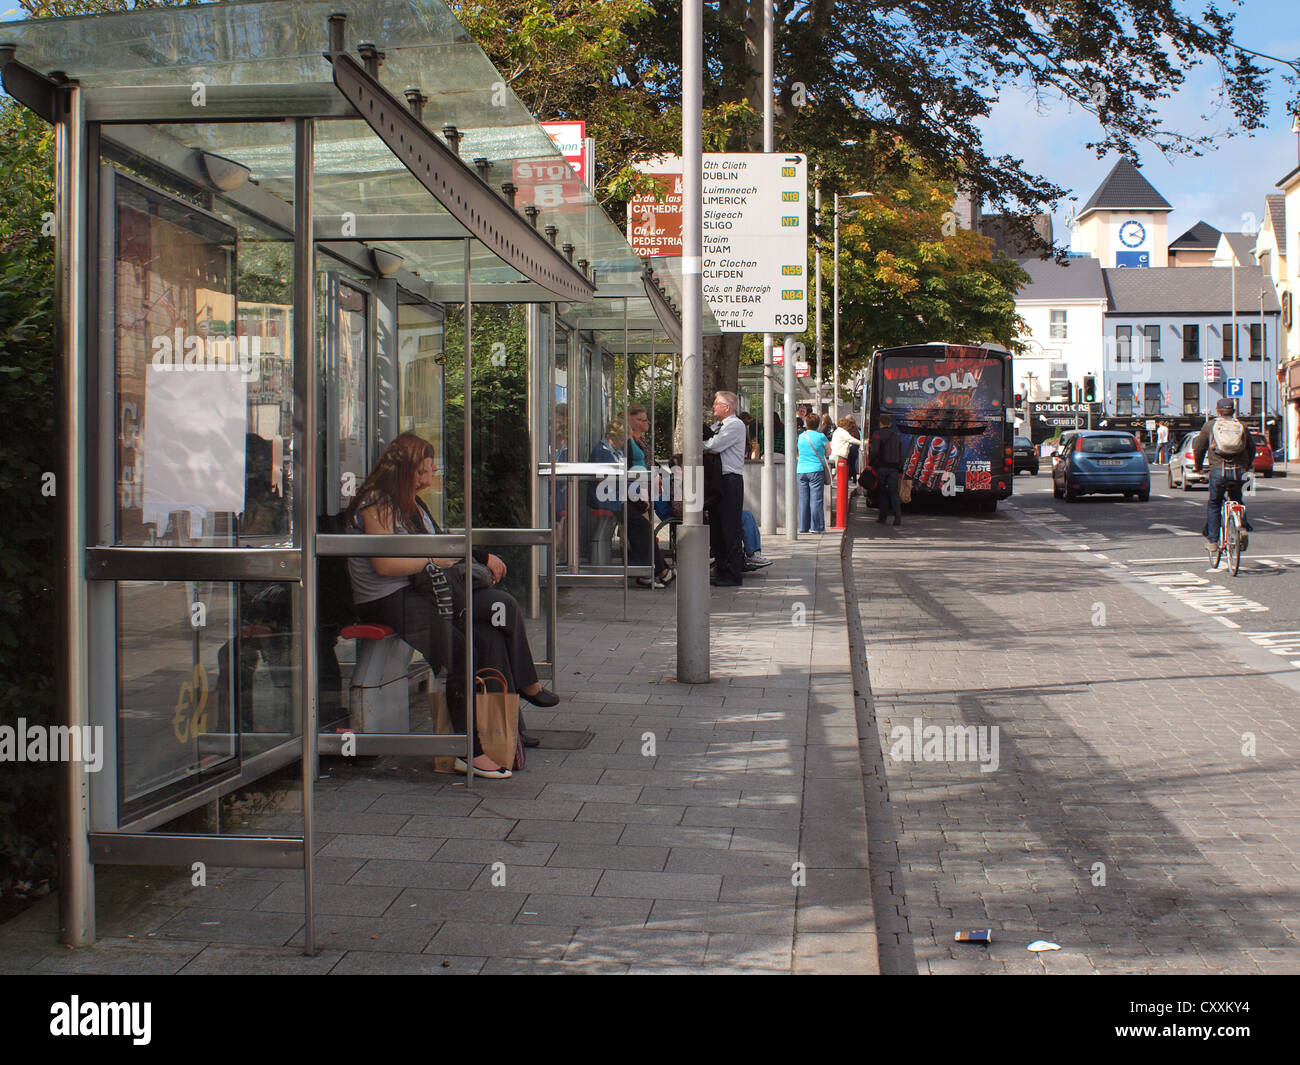 Passeggeri di un autobus in attesa di un servizio locale di autobus alla fermata nella storica piazza Ayres, città di Galway in Irlanda dell'Ovest. Foto Stock